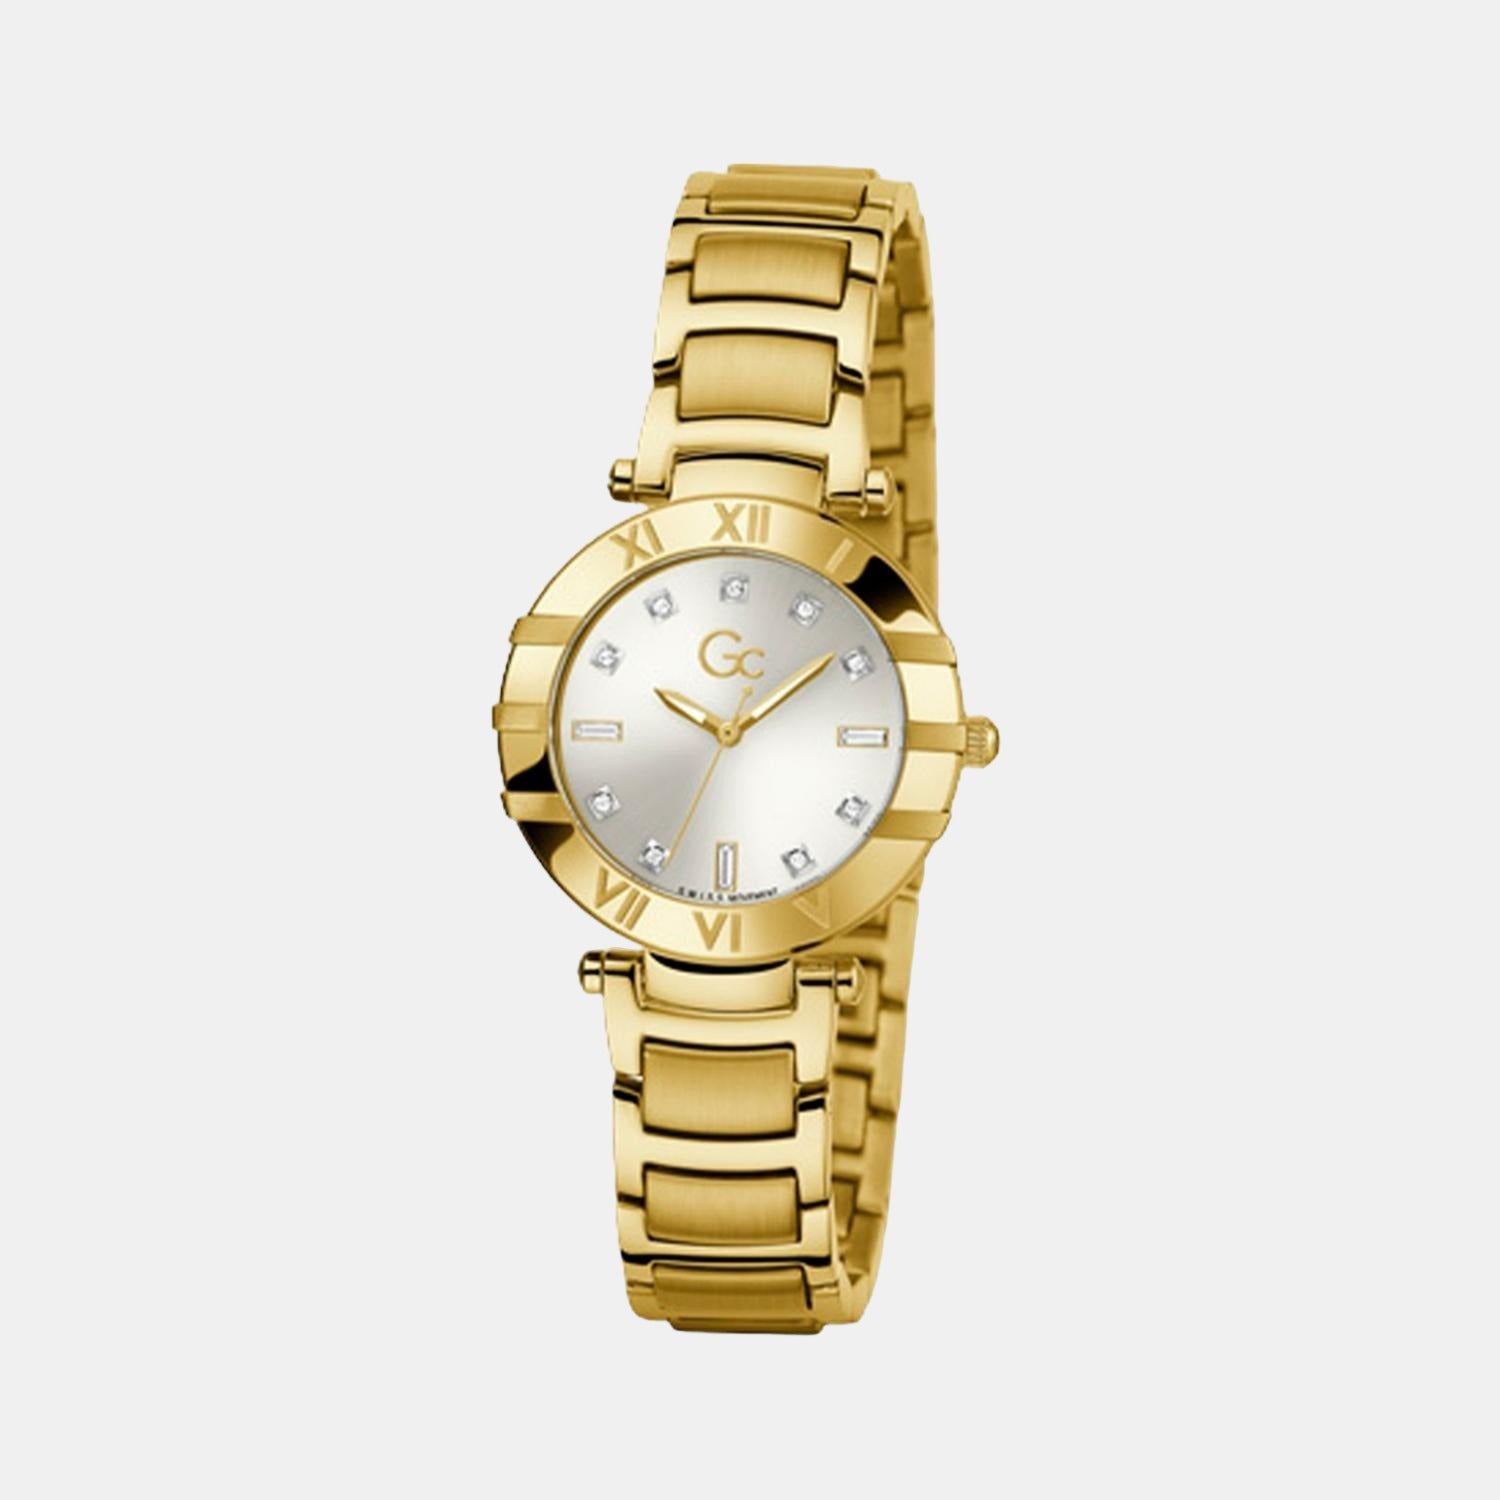 gc-white-analog-women-watch-z03003l1mf